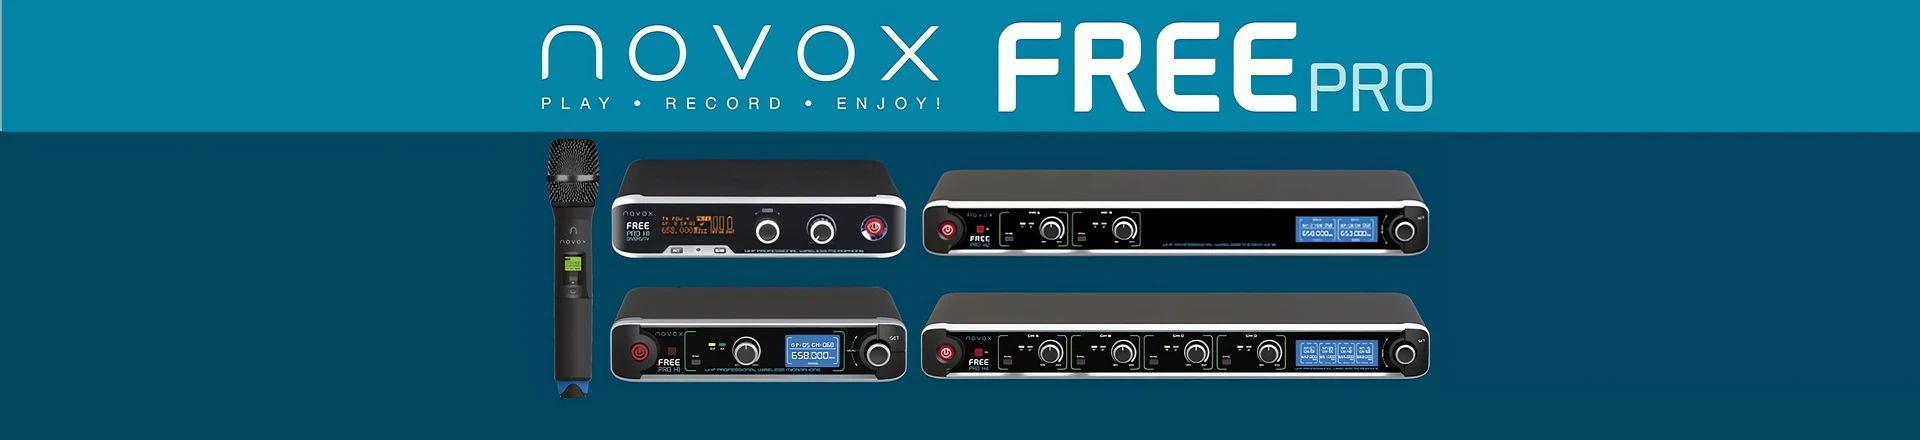 Novox FREE PRO - nowa seria mikrofonów bezprzewodowych